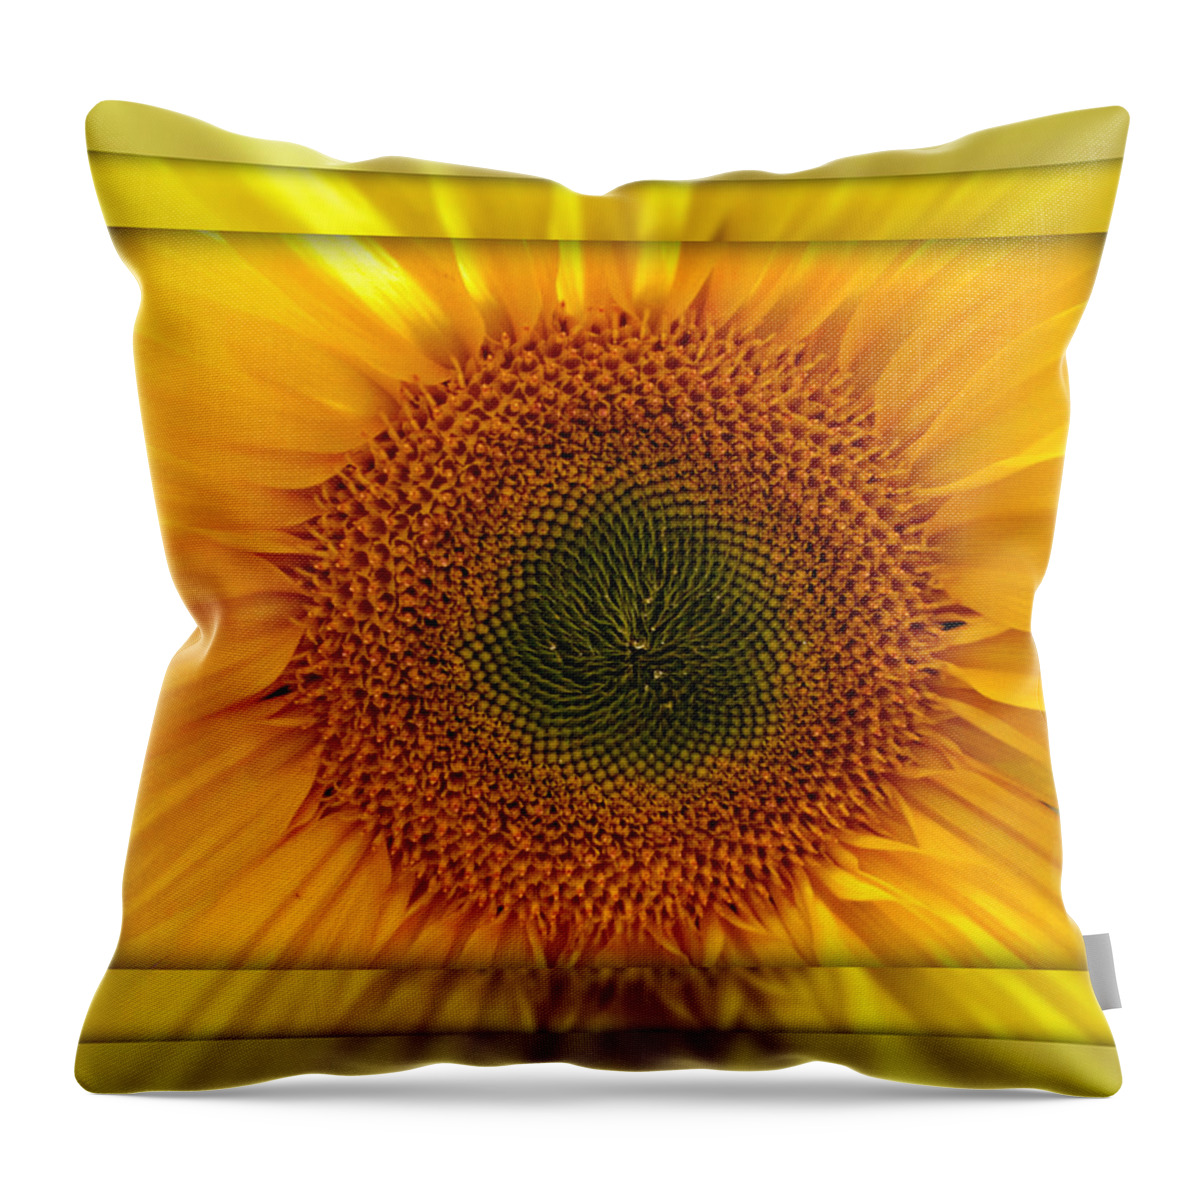 Sun Flower Throw Pillow featuring the photograph Sun Flower Dream by John Shiron